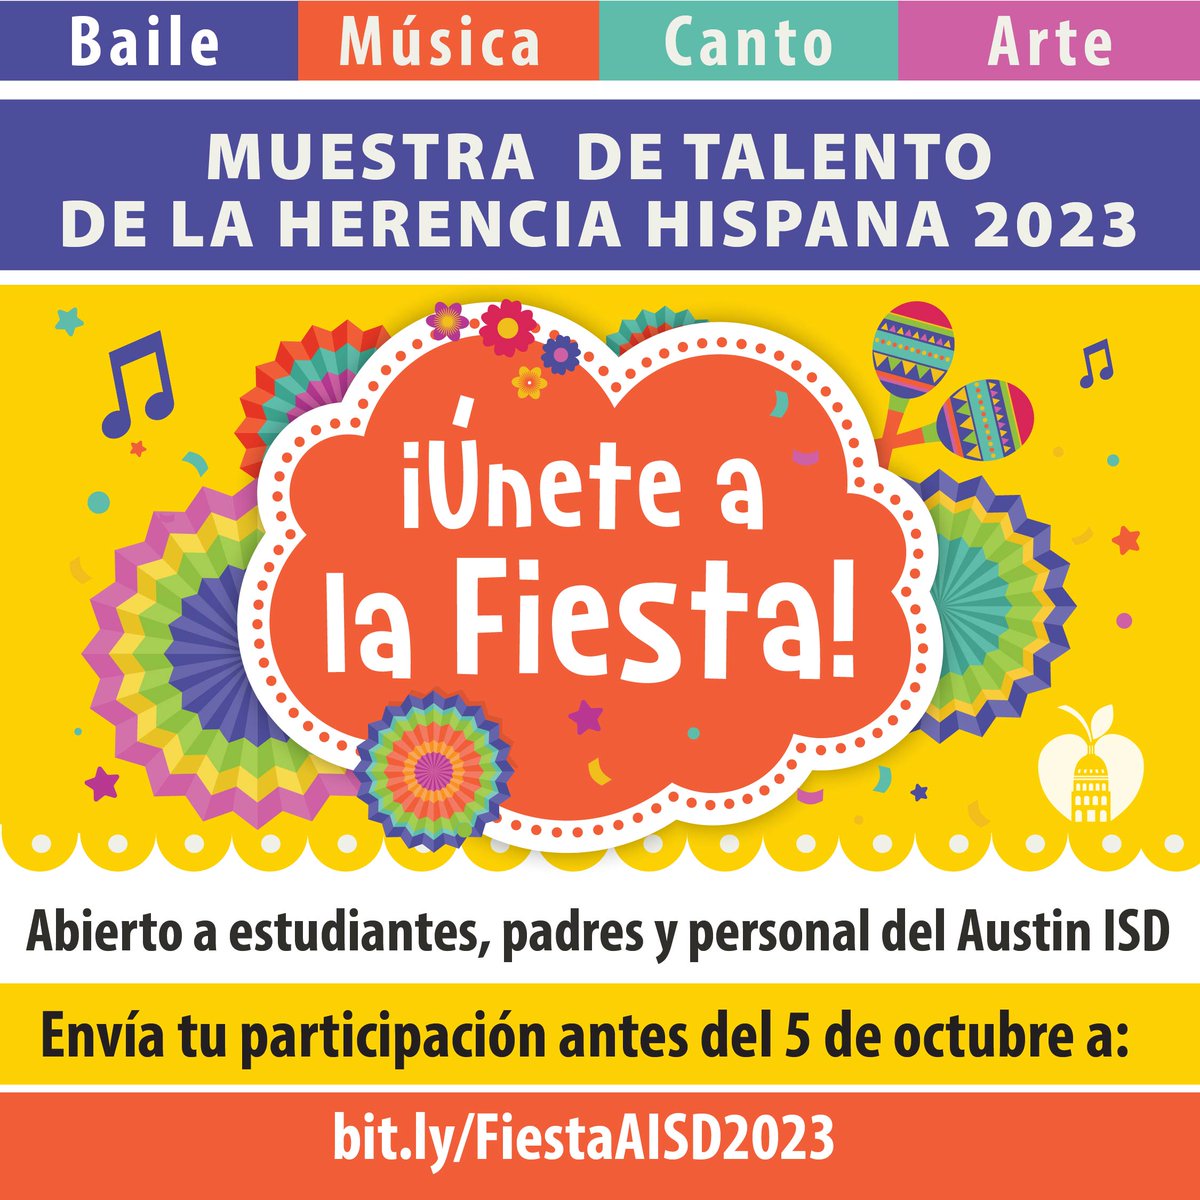 Muestra de Talento de la Herencia hispana 2023 “¡Únete a la Fiesta! Abierto a estudiantes, padres y personal del Austin ISD. Modalidades de talento: Baile, Música, Canto y Arte que celebren la cultura hispana (en inglés o español)